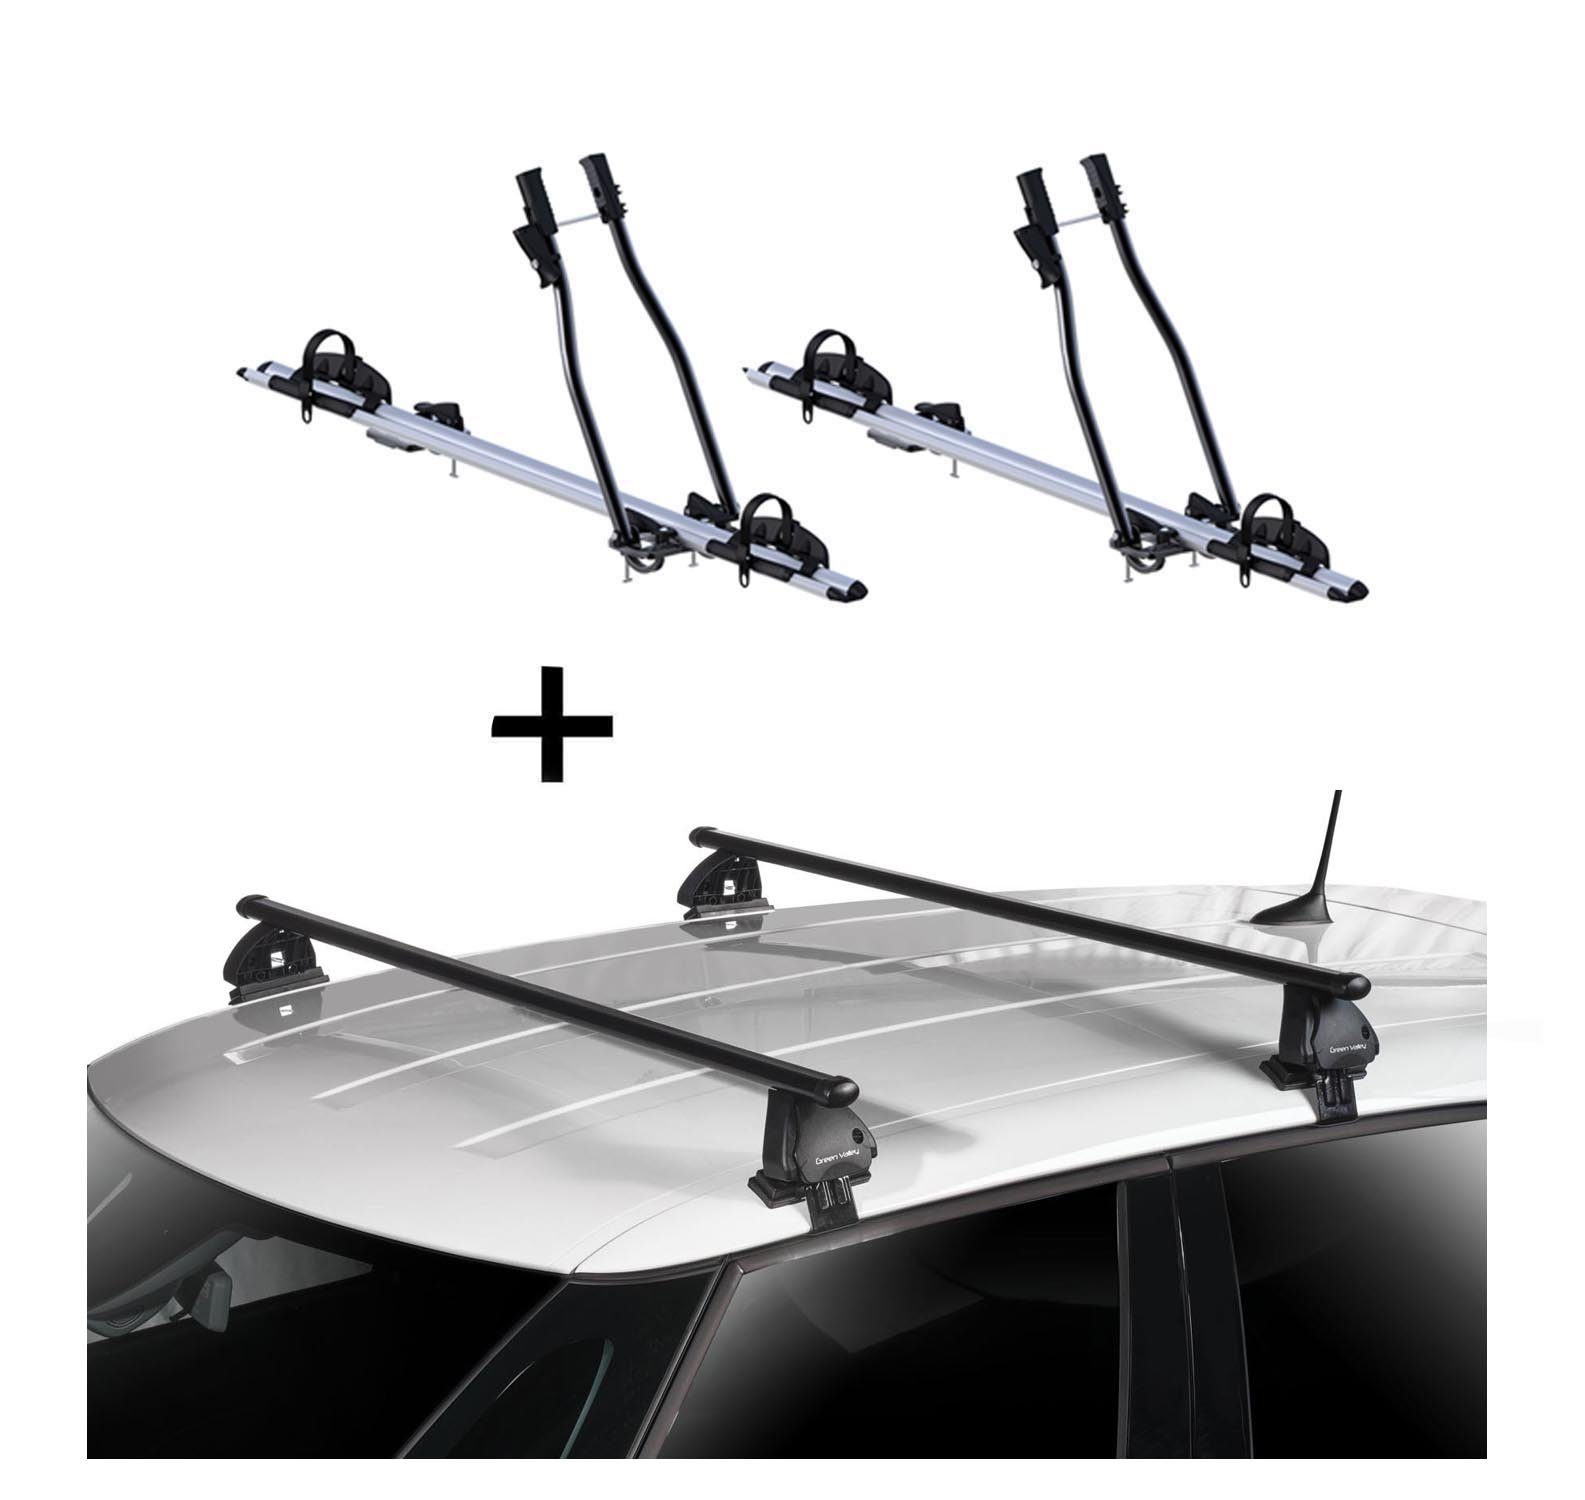 VDP Dachträger, 2x Fahrradträger SAGITTAR + Dachträger VDP EVO Stahl kompatibel mit Peugeot 508 4 Türer 2011-2018